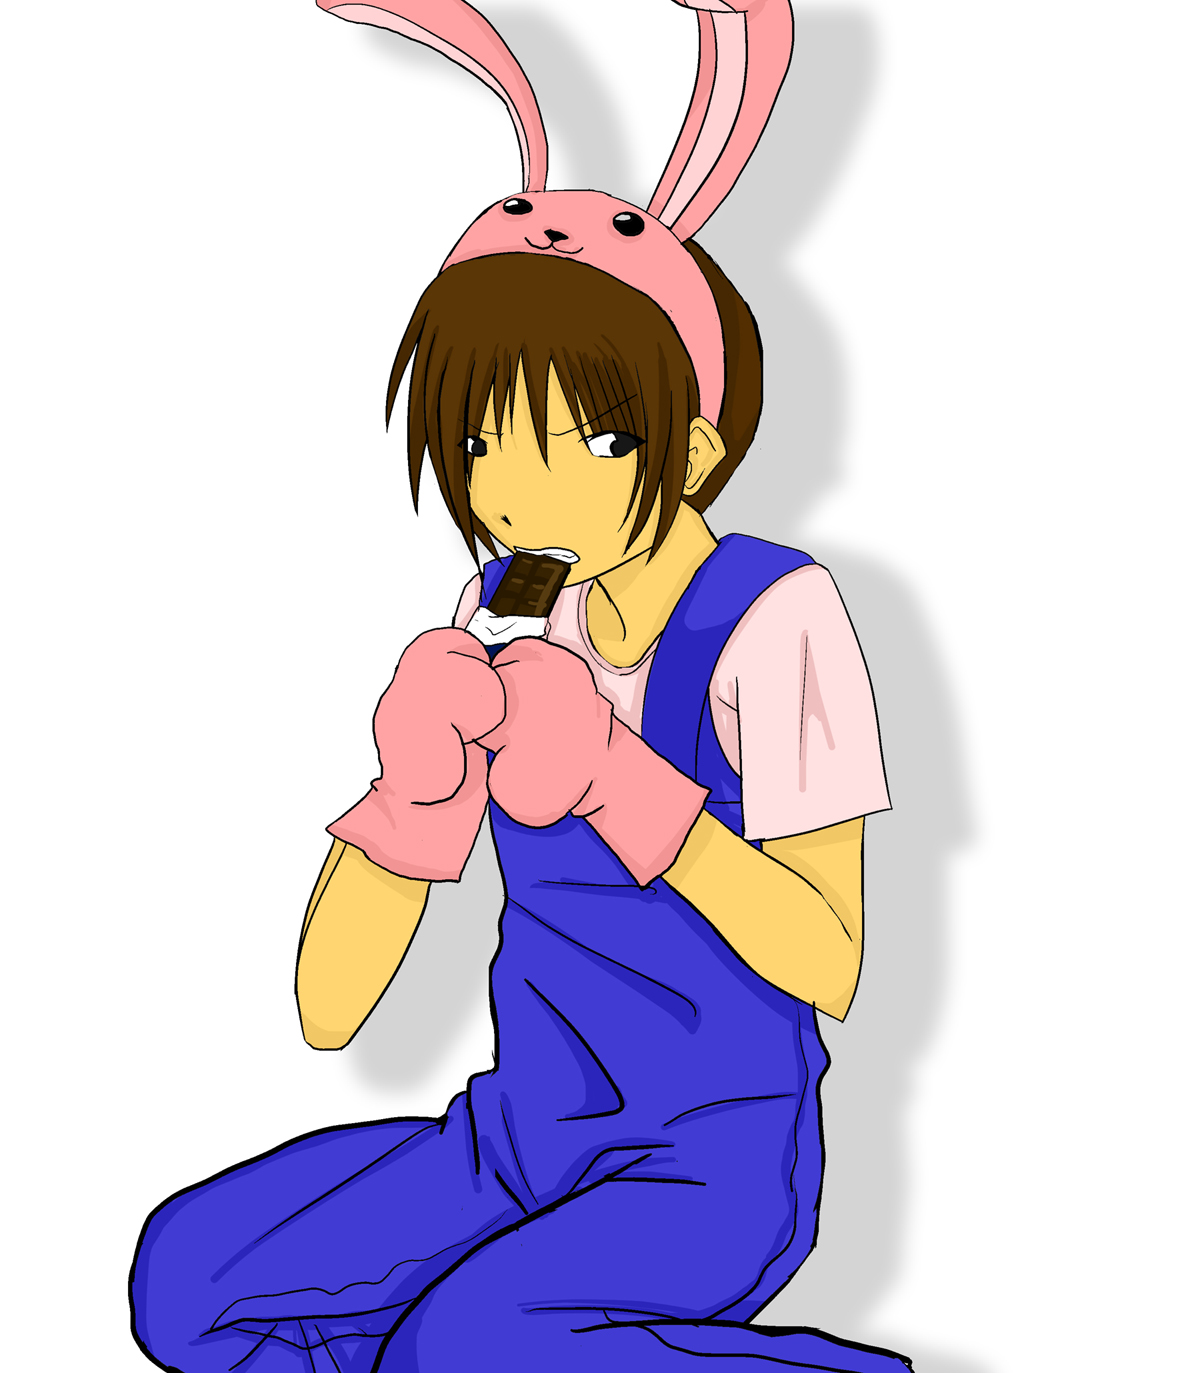 Hisaki in his bunny costume